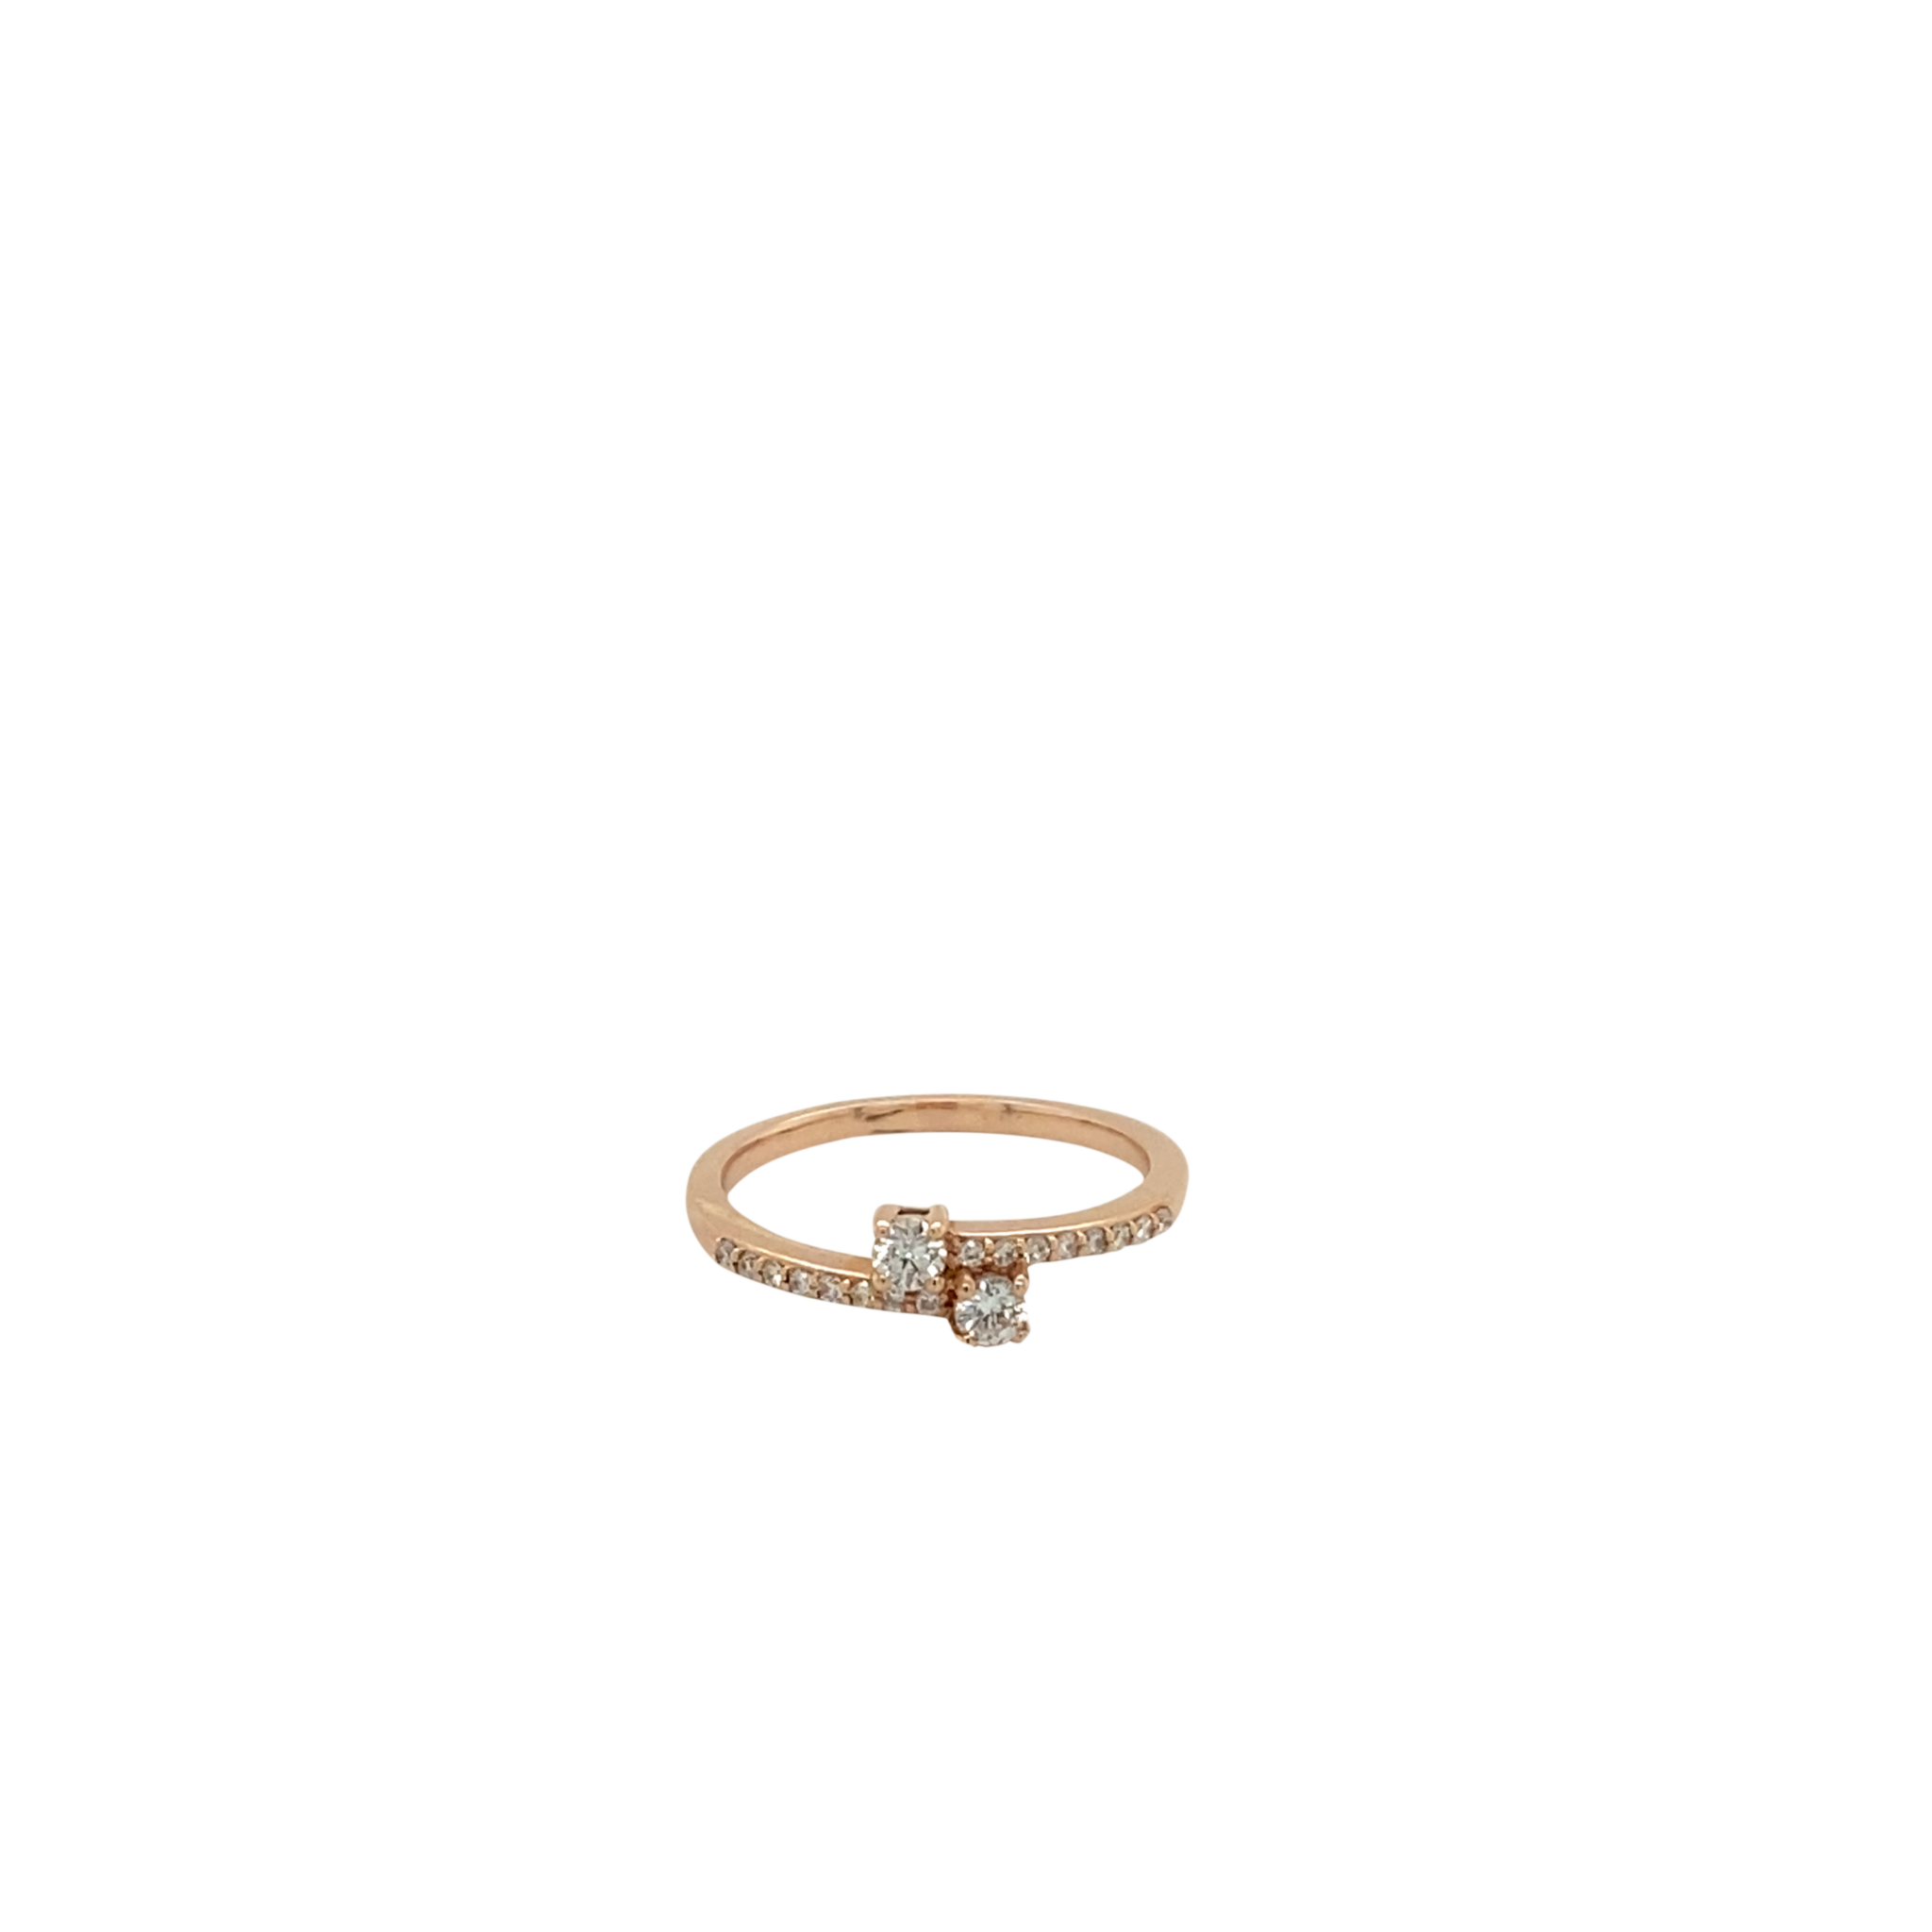 14 Karat Rose Gold Diamond Fashion Ring